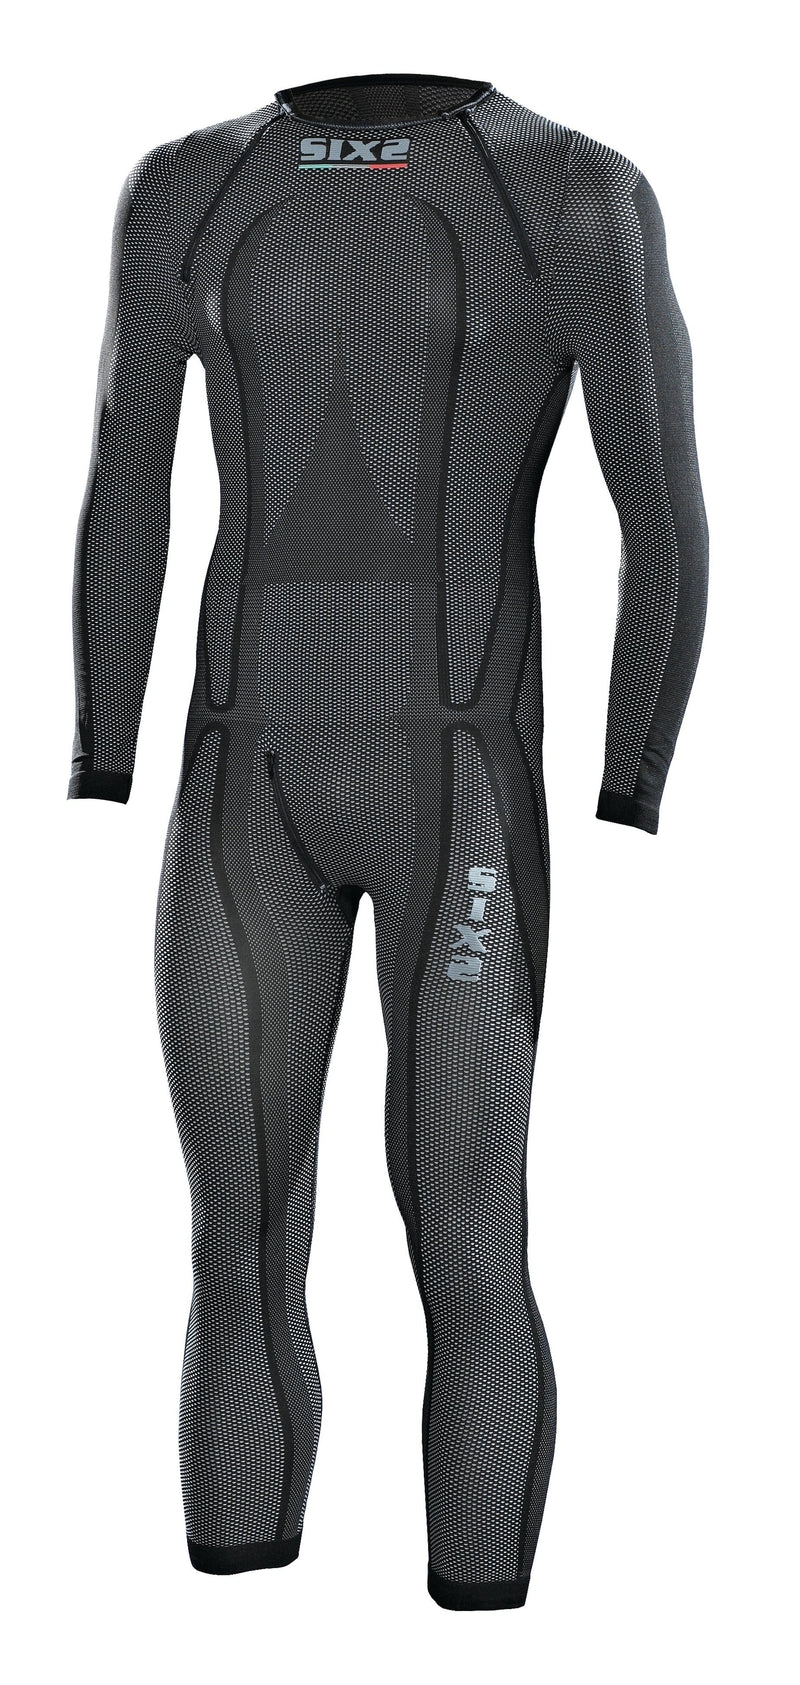 Sixs - One-piece Carbon Underwear undersuit